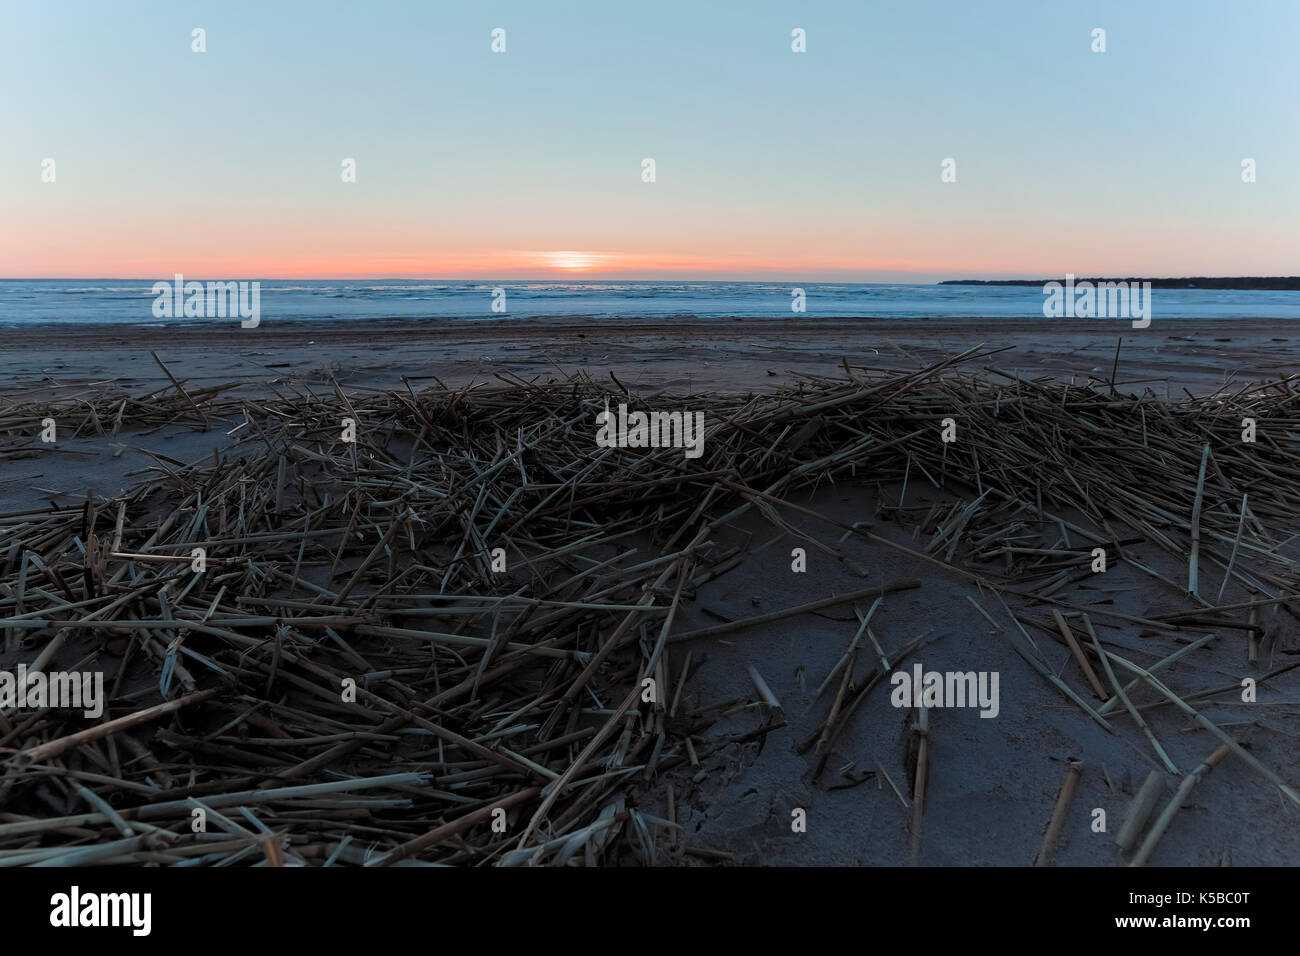 Impianti a secco sulle rive del golfo di Finlandia al tramonto in primavera Foto Stock